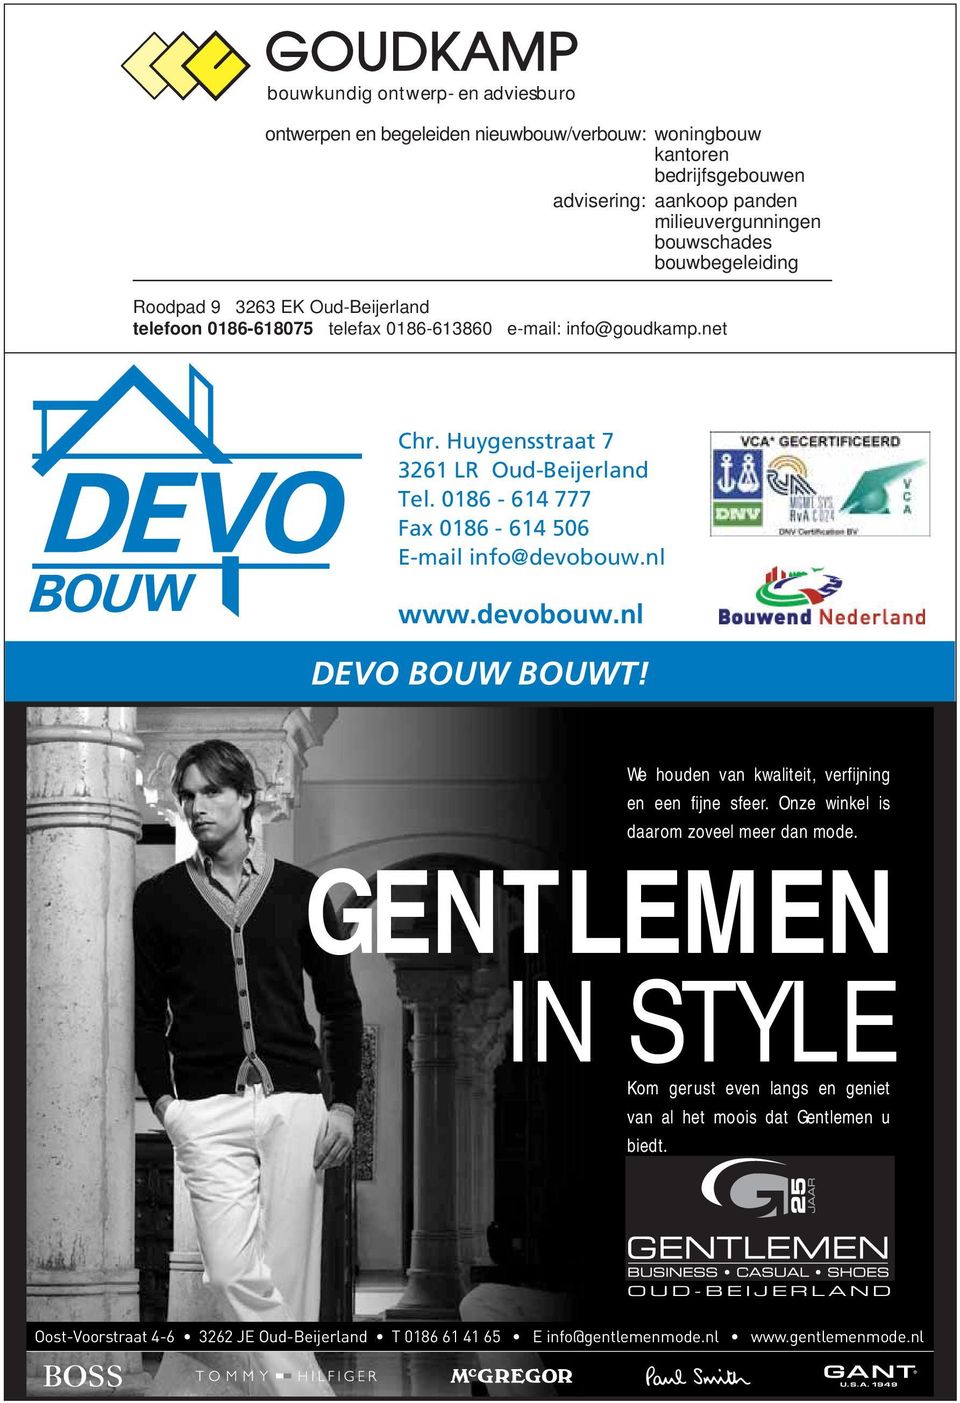 Huygensstraat 7 3261 LR Oud-Beijerland Tel. 0186-614 777 Fax 0186-614 506 E-mail info@devobouw.nl www.devobouw.nl DEVO BOUW BOUWT!